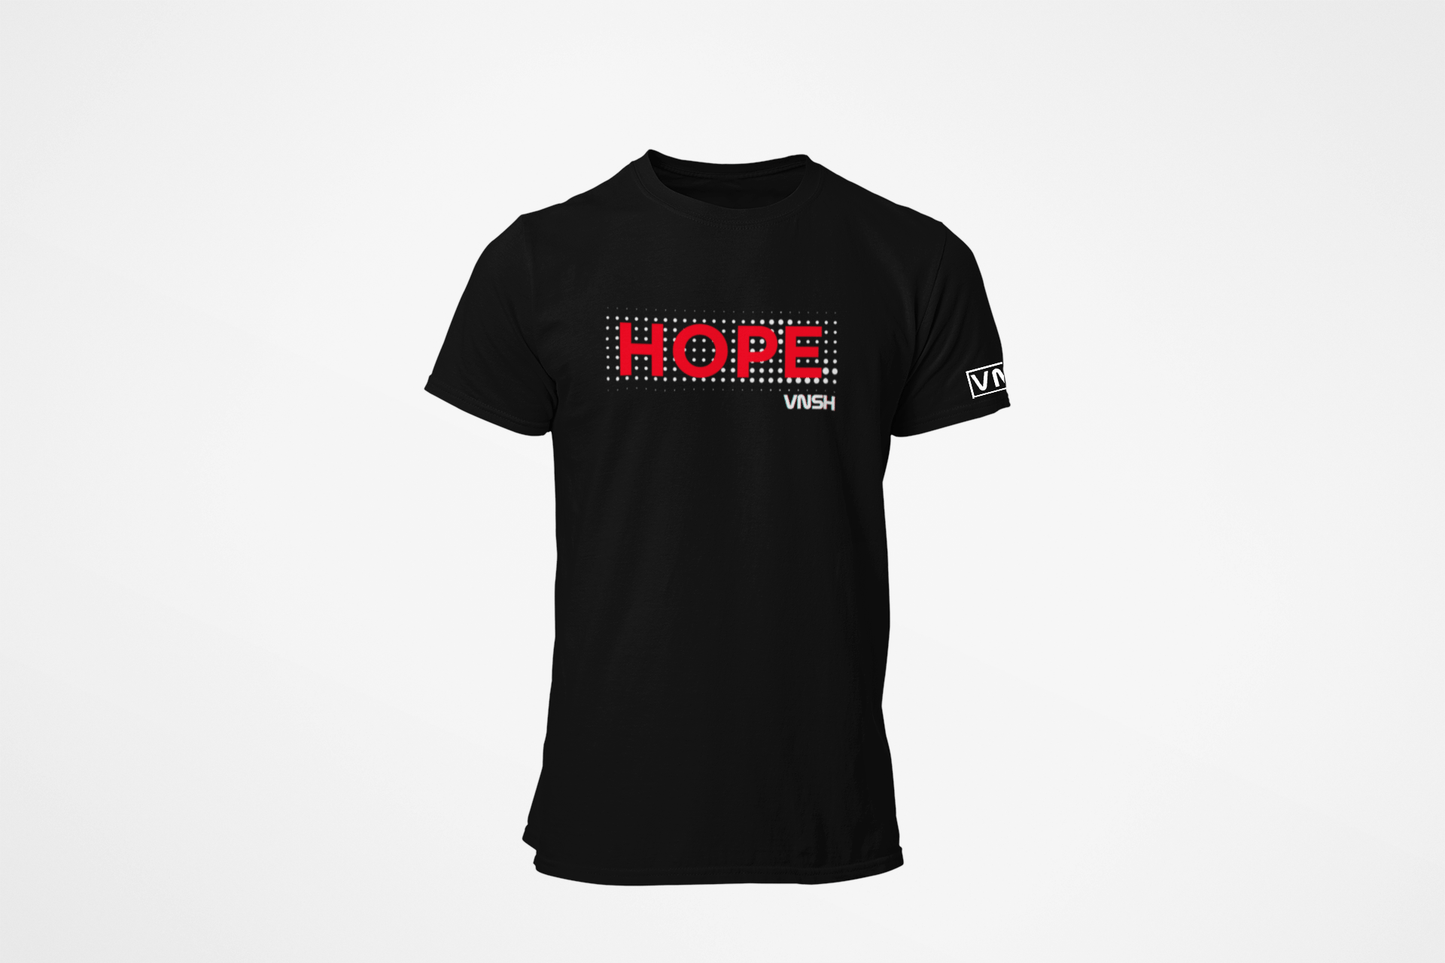 HOPE Shirt